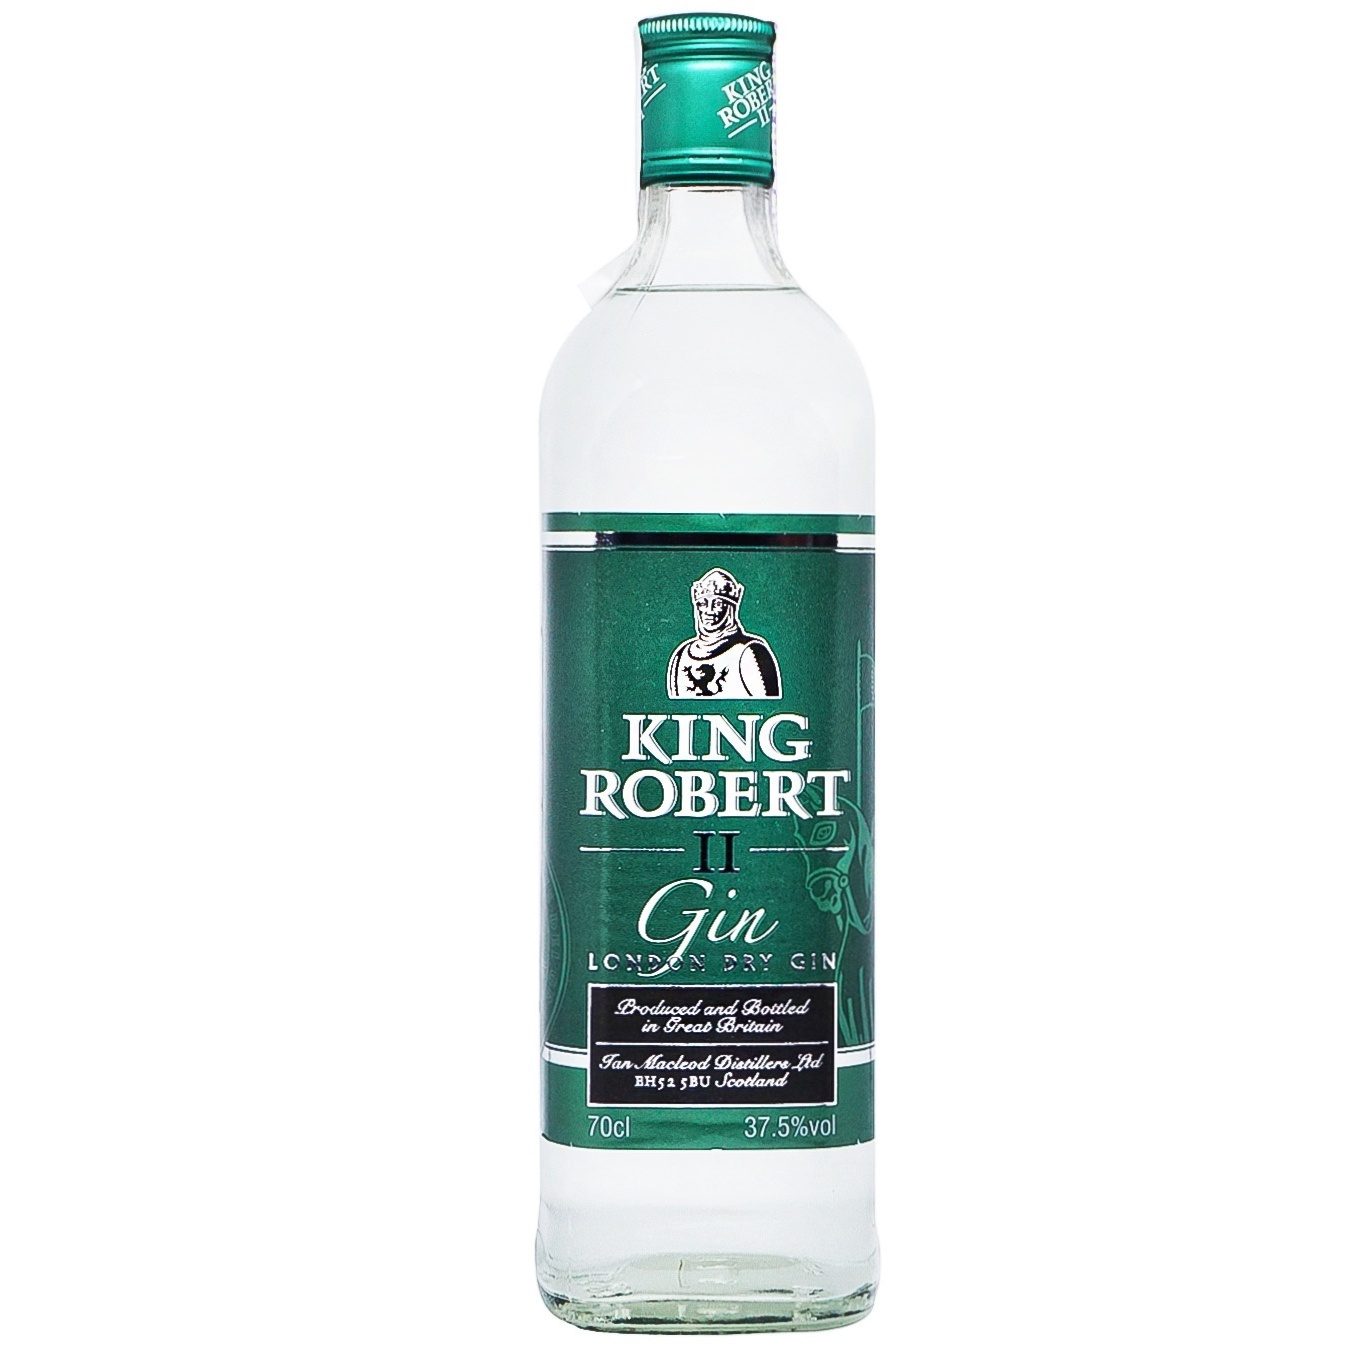 Gin King Robert II London Dry 37.5% 0.7l